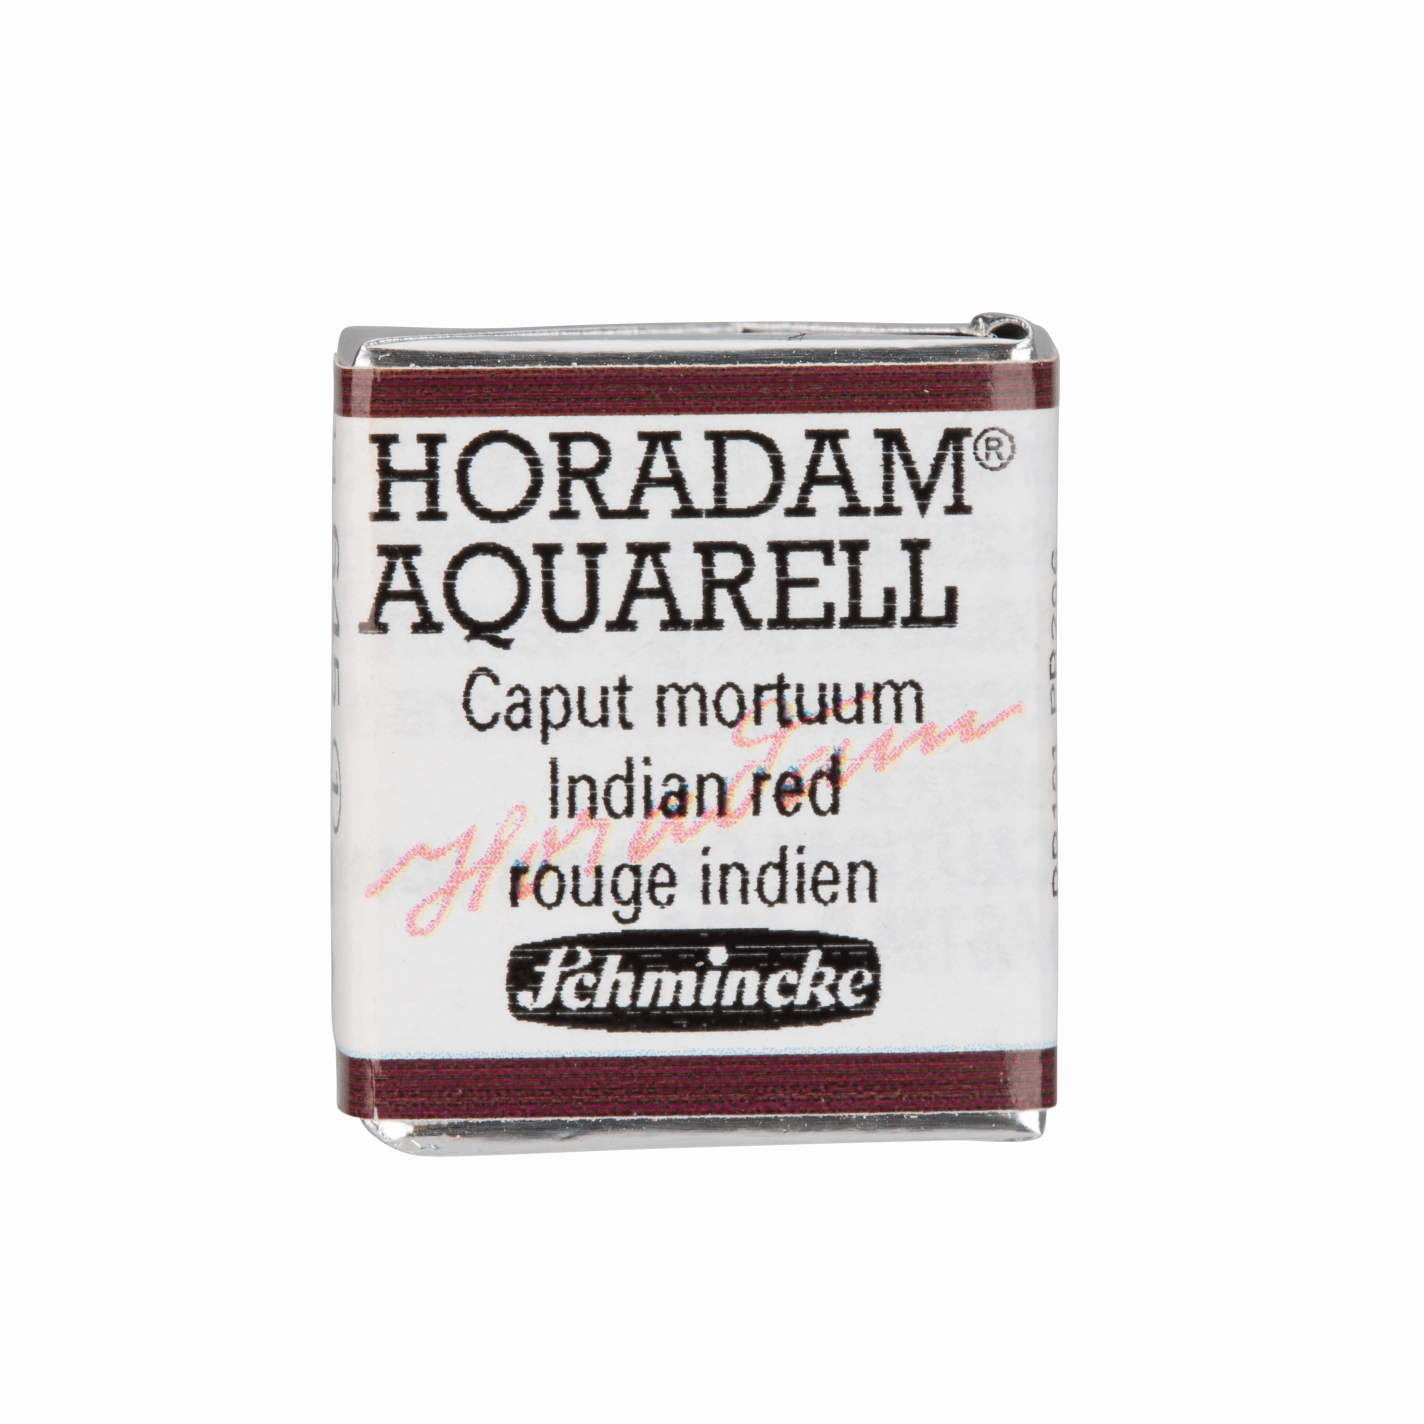 Schmincke Horadam Aquarell pans 1/2 pan Indian Red